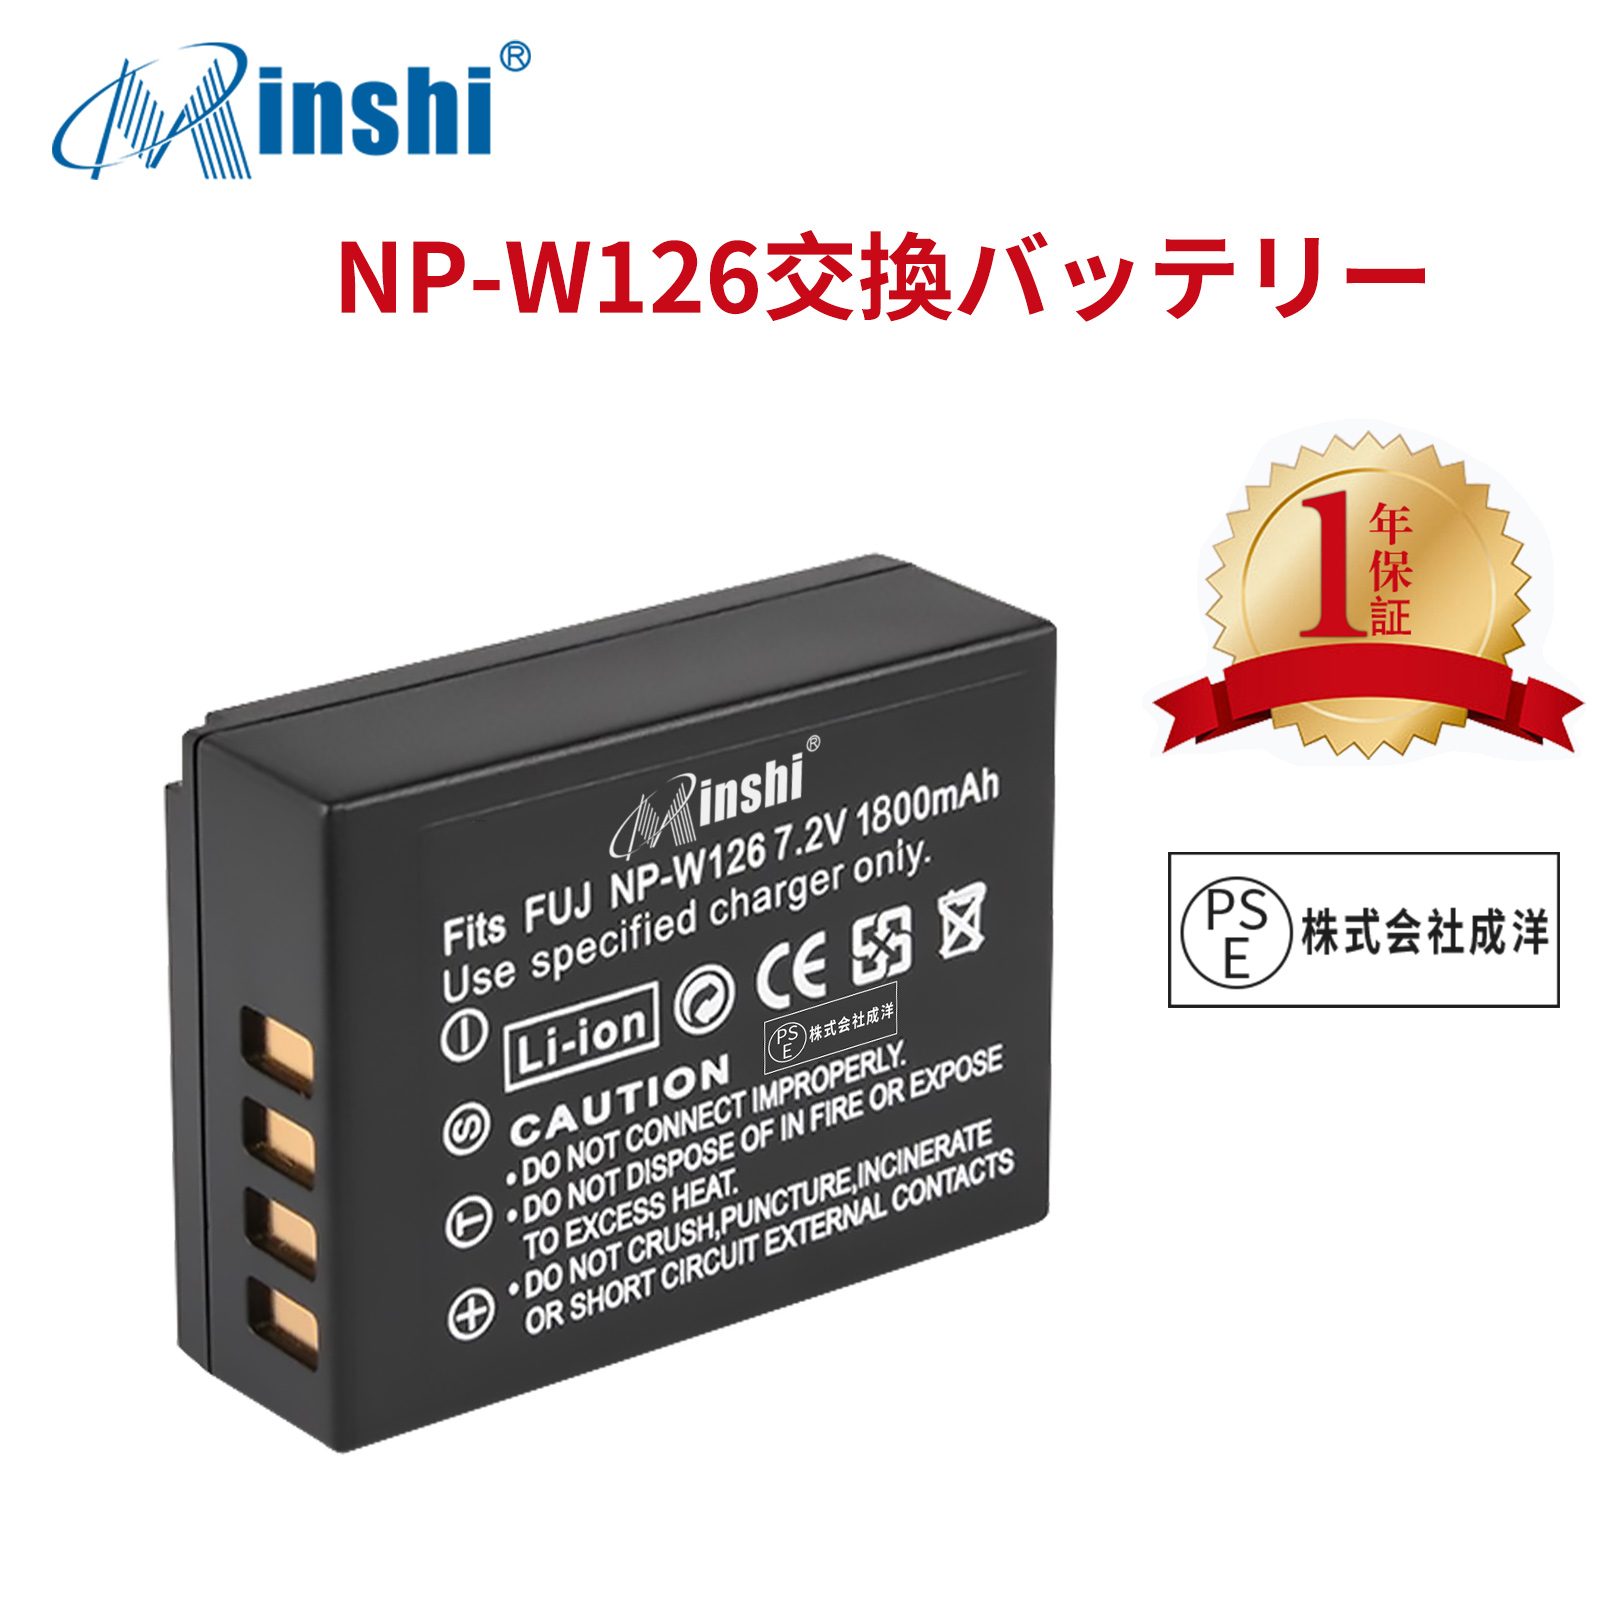 【1年保証】minshi FUJIFILM X-E2S NP-W126 【1800mAh 7.2V】 NP-W126 NP-W126S高品質 NP-W126S NP-W126互換バッテリー